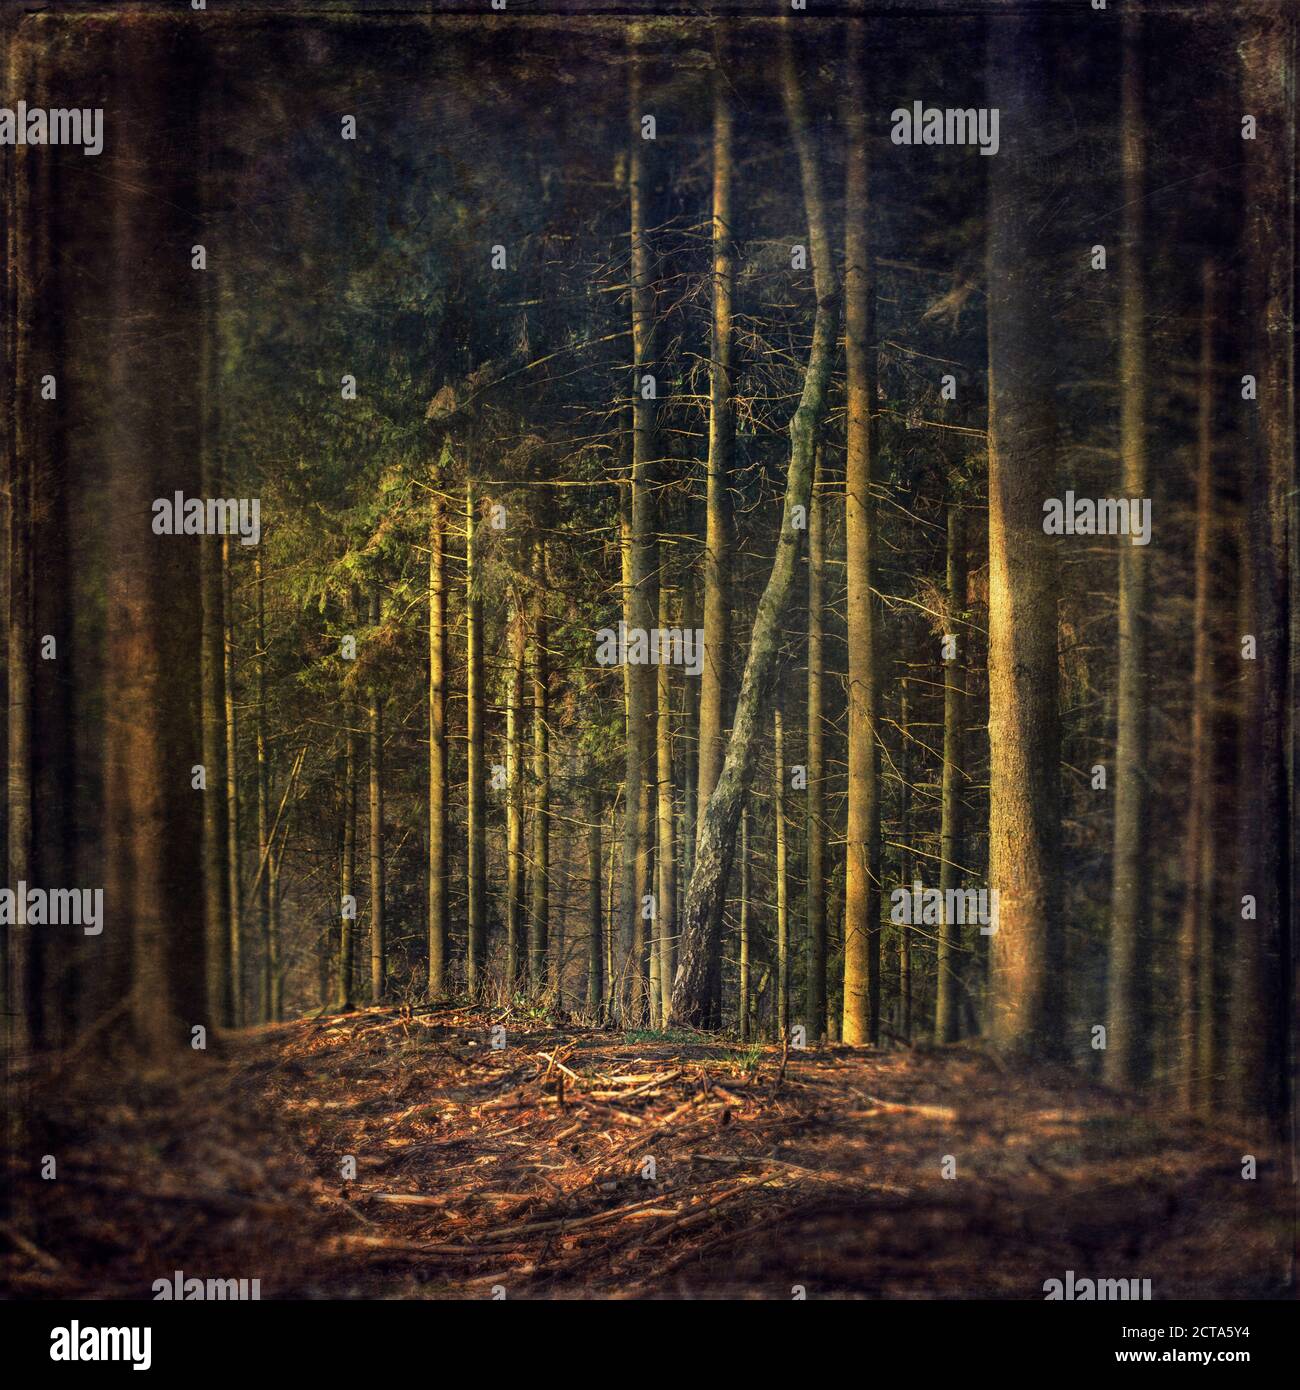 Deutschland, in der Nähe von Wuppertal, Waldlichtung in einem Nadelwald, Textured Wirkung Stockfoto